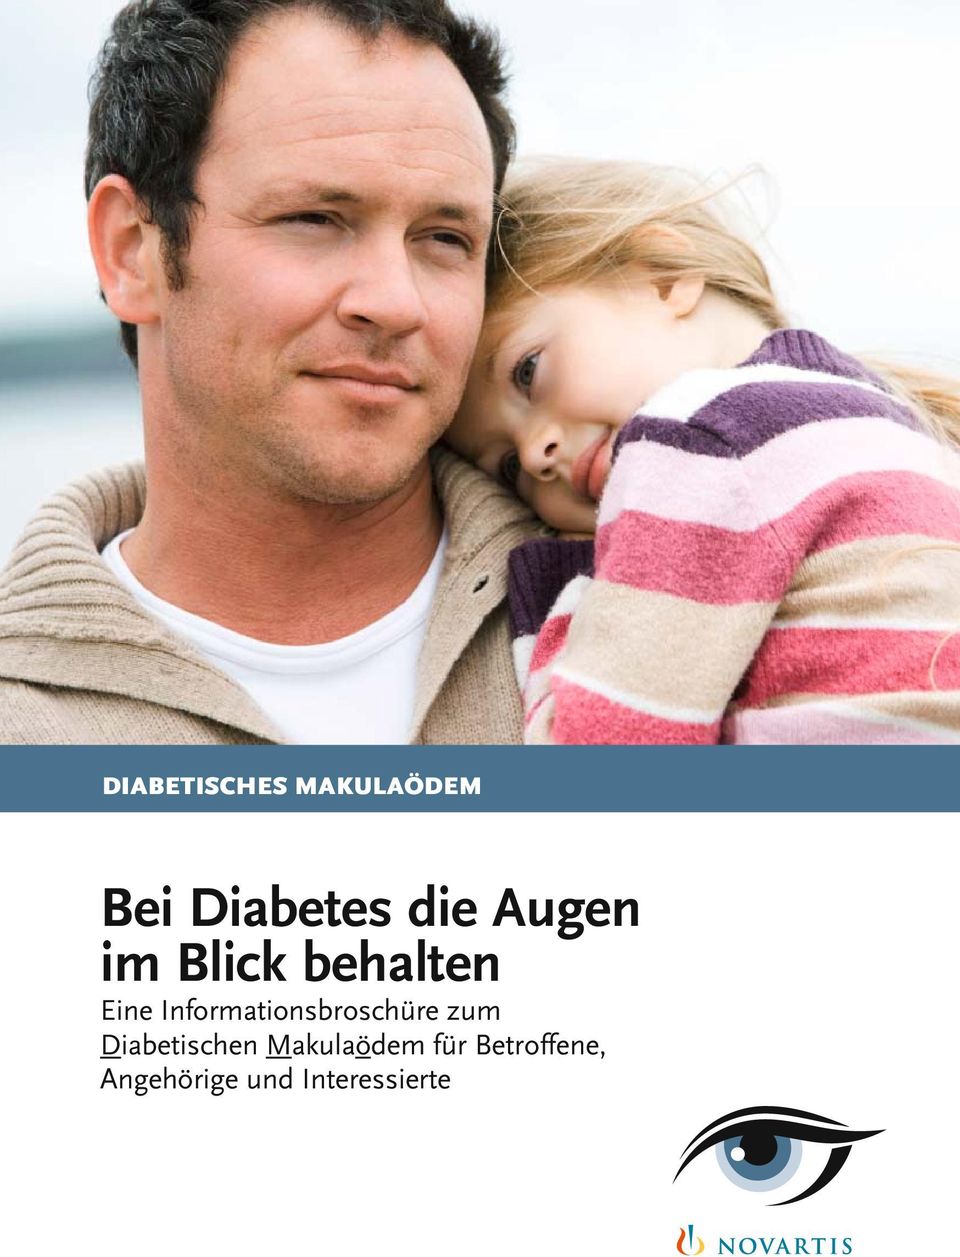 Informationsbroschüre zum Diabetischen